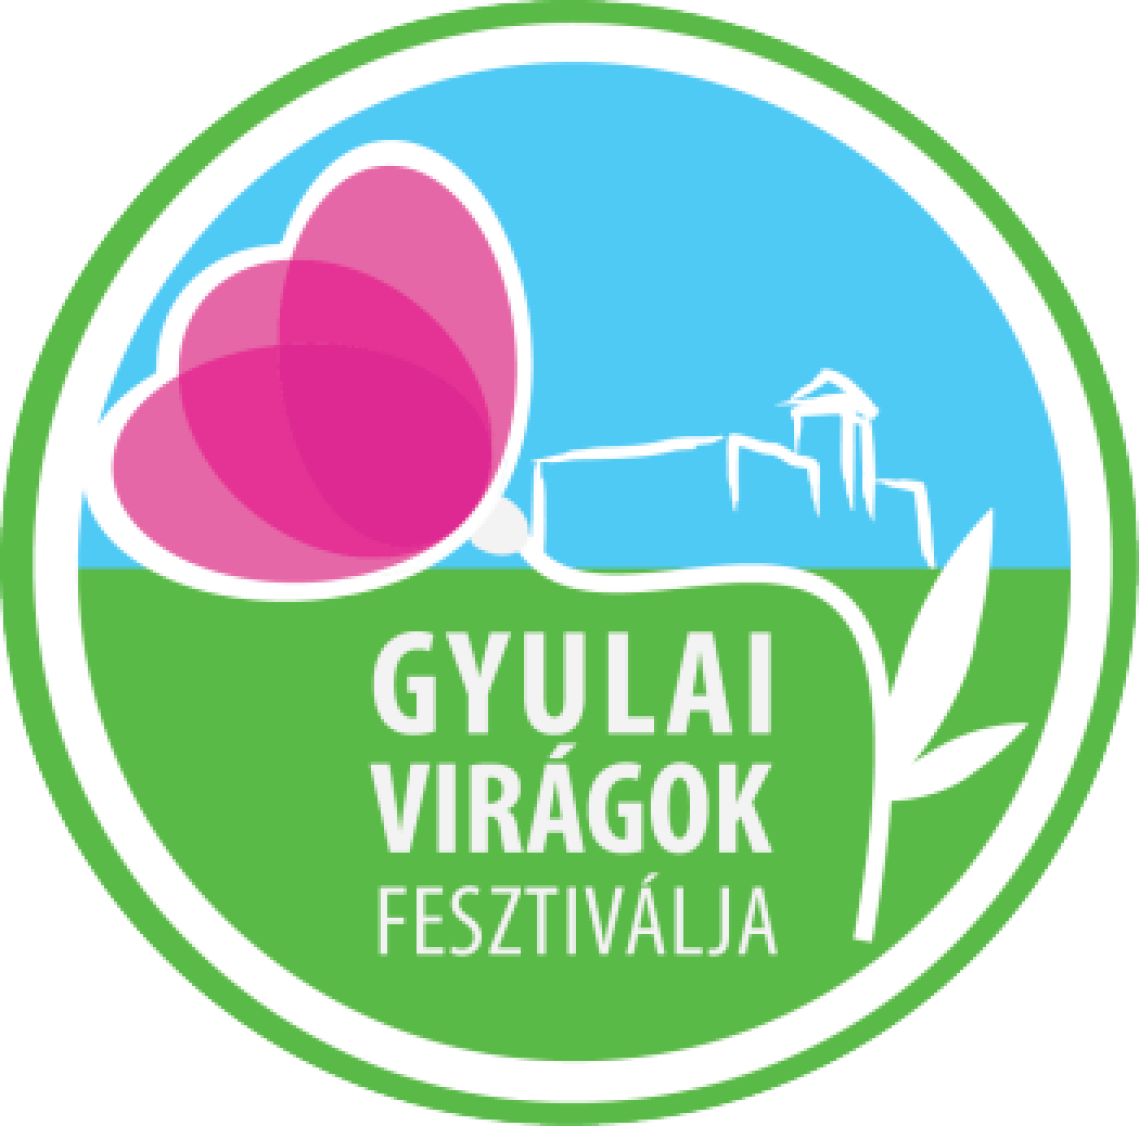 gyulai-viragok-fesztivalja-logo-01.png